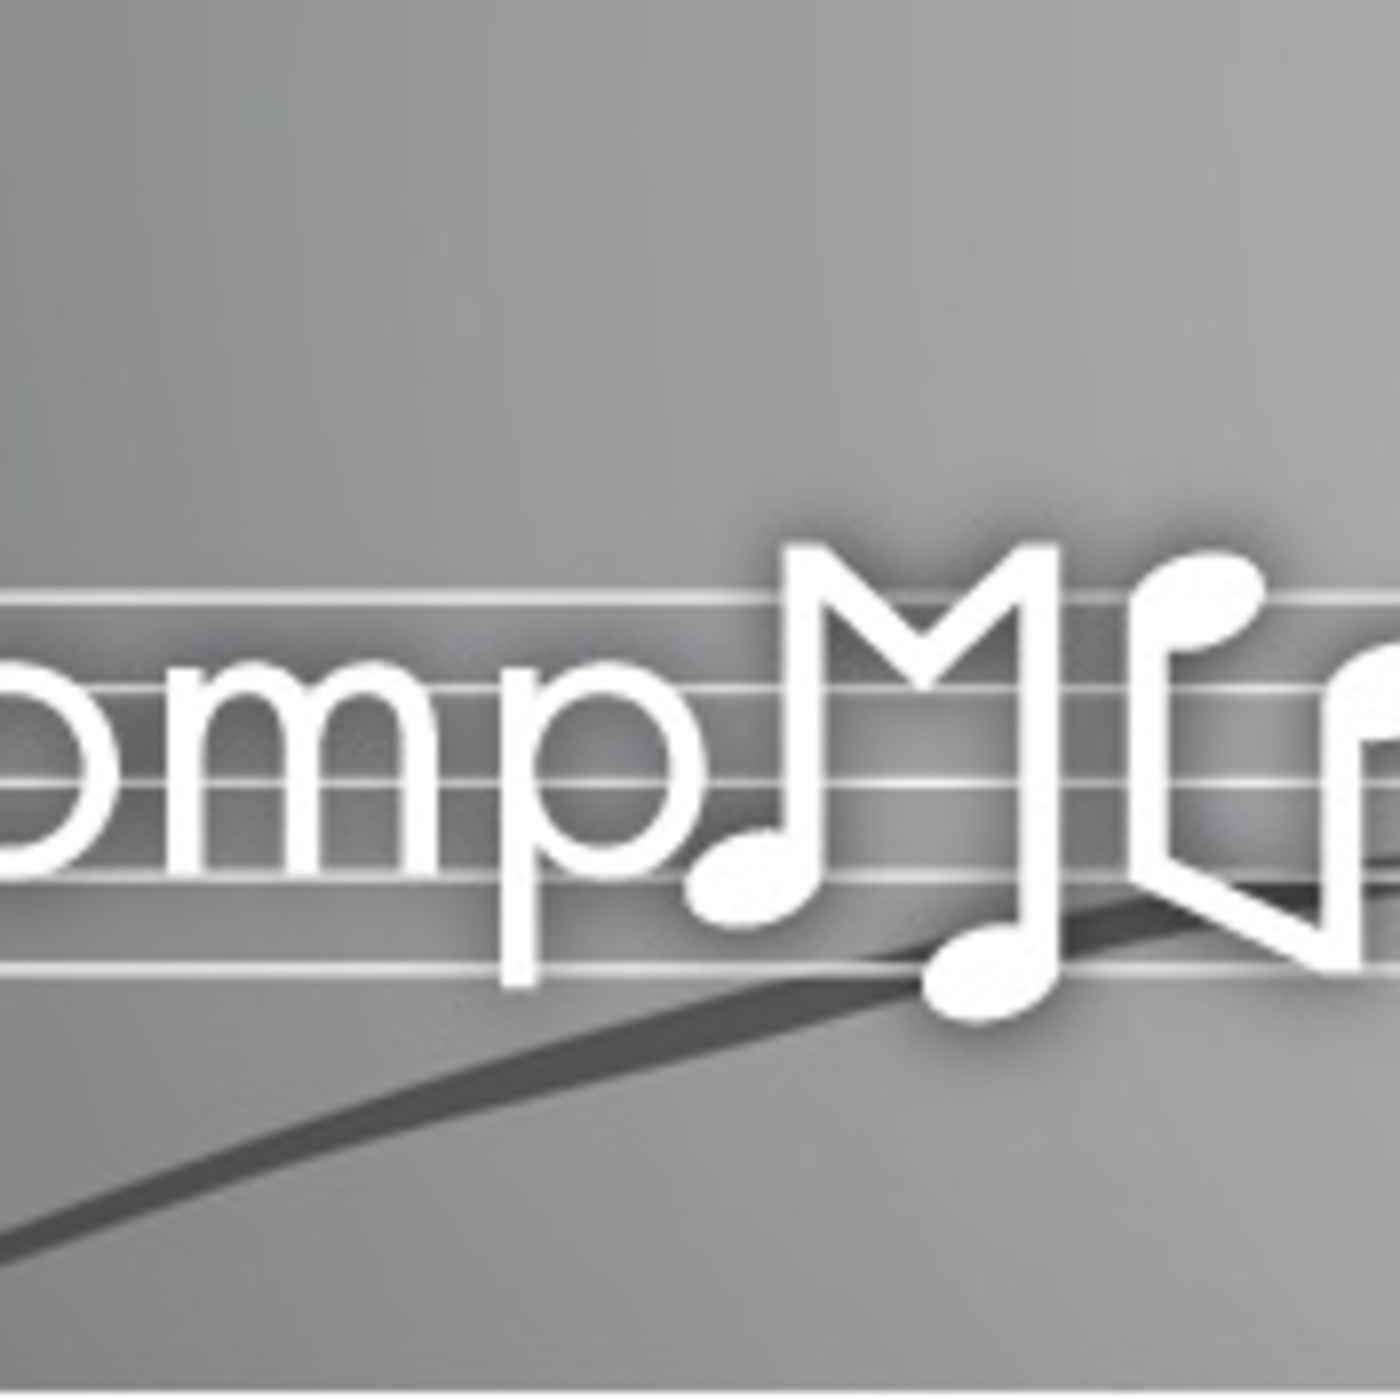 CompMUS' Podcast